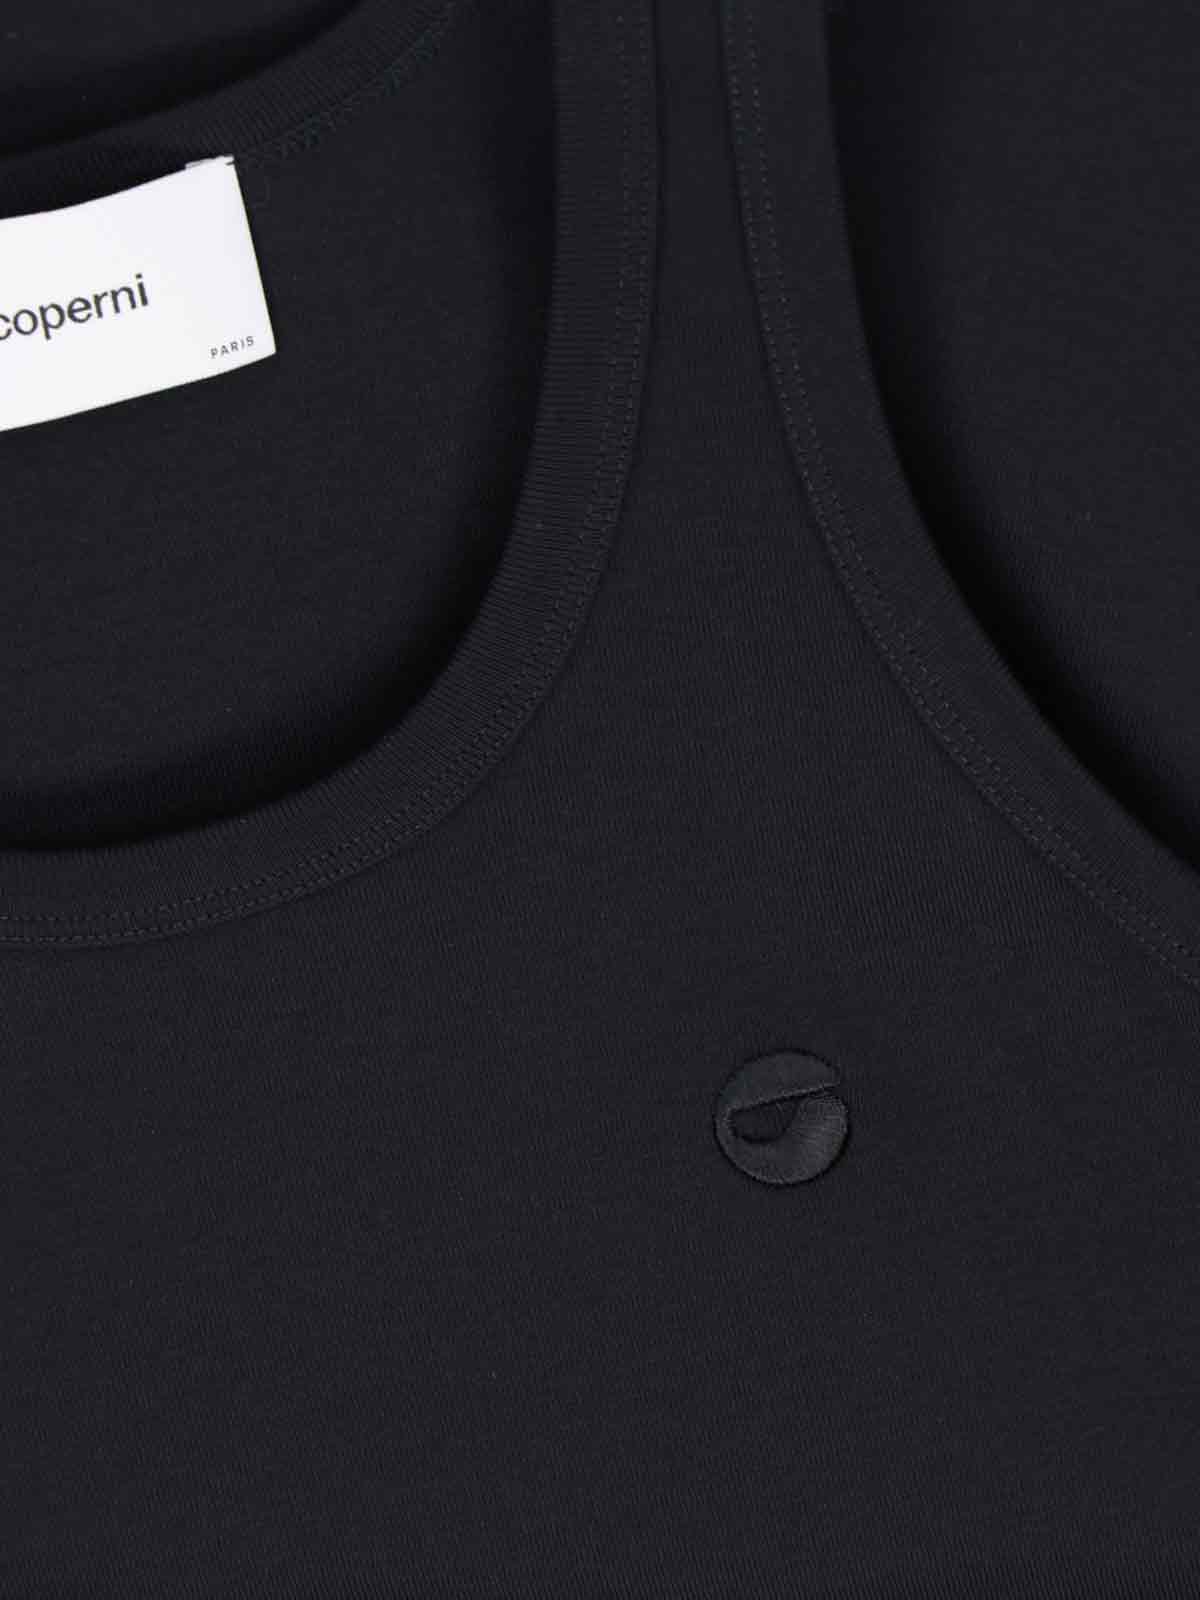 Shop Coperni Logo Tank Top In Black